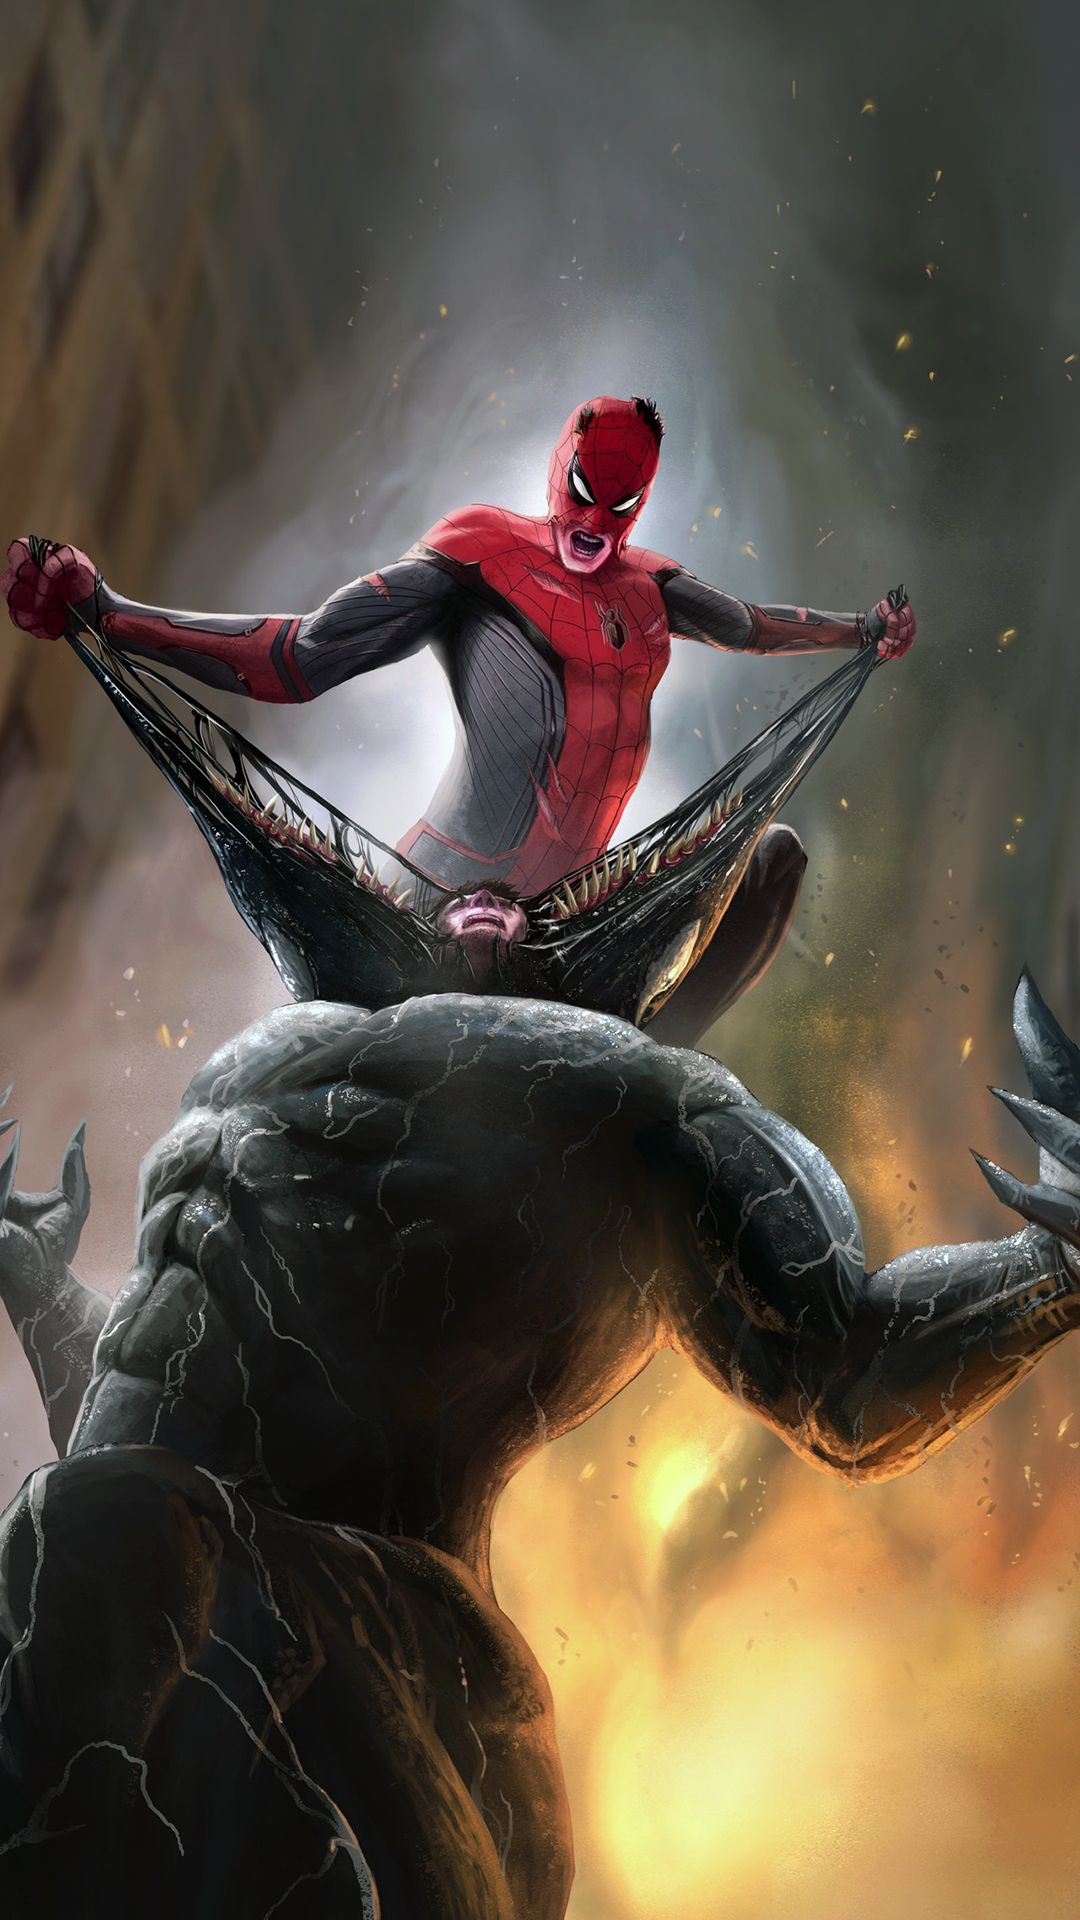 1080x1920 Spiderman vs venom mobile wallpaper | Marvel superhero posters, Marvel spiderman, Superhero wallpaper